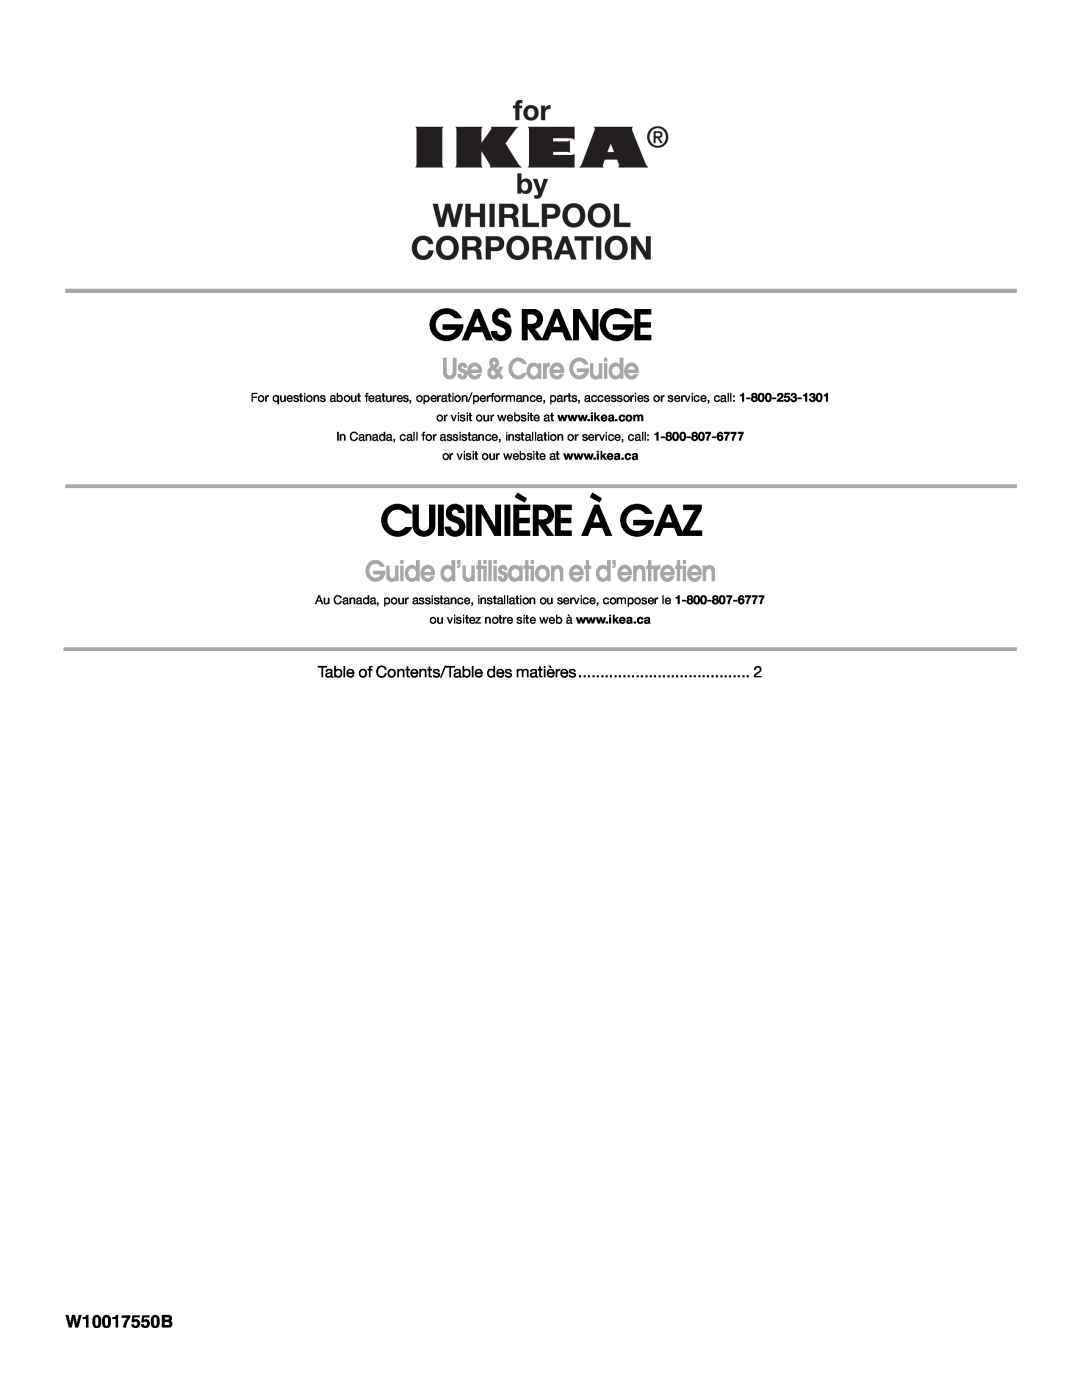 IKEA manual Gas Range, Cuisinière À Gaz, Use & Care Guide, Guide d’utilisation et d’entretien, W10017550B 